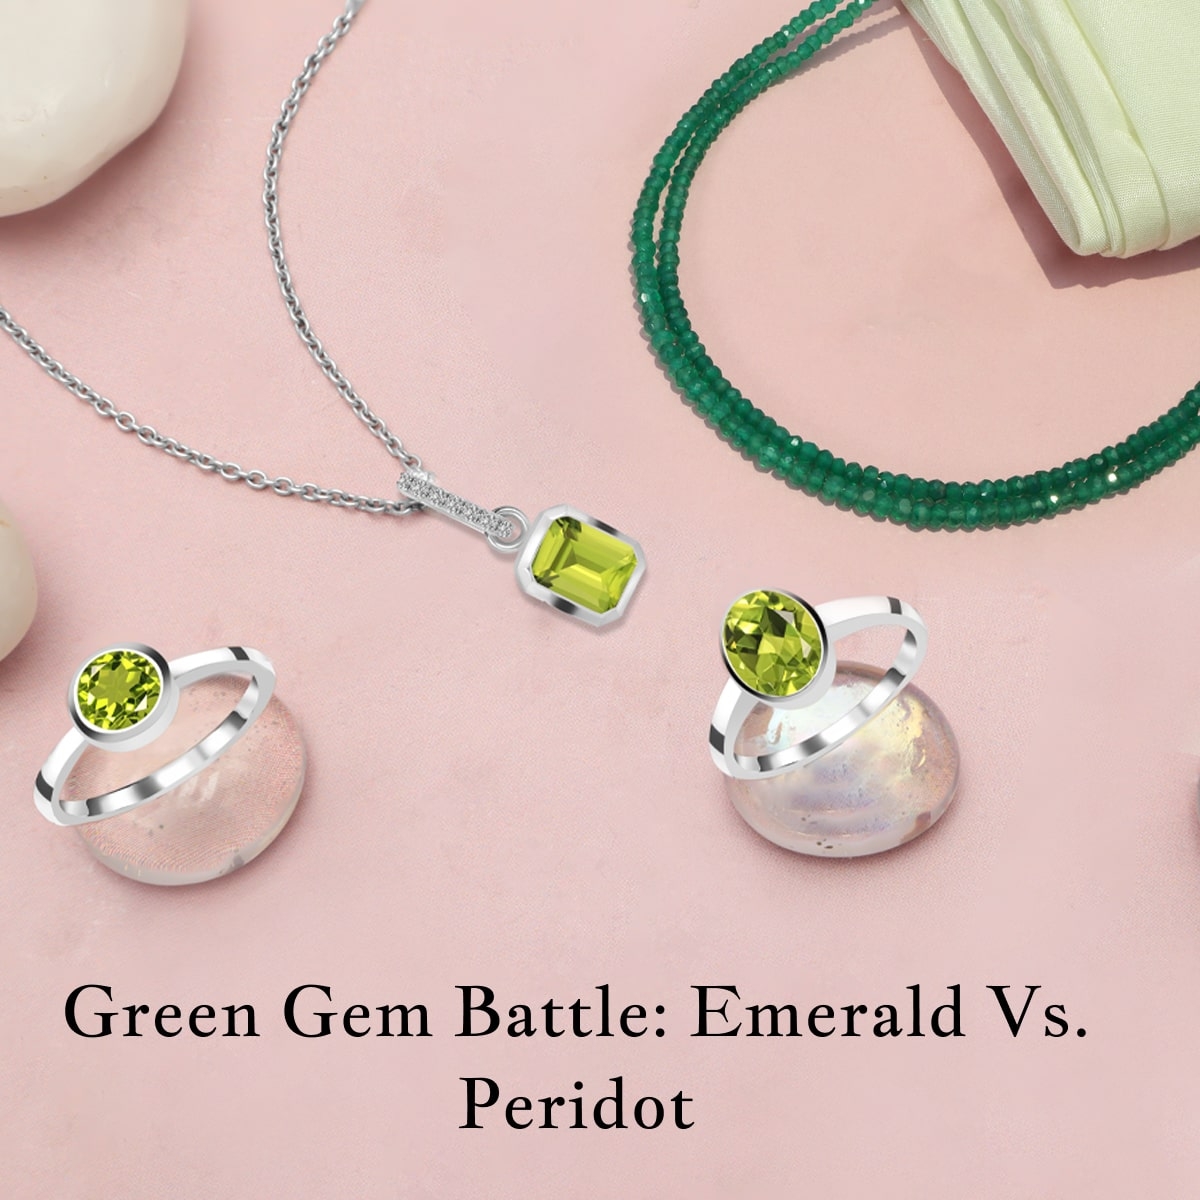 Emerald vs. Peridot